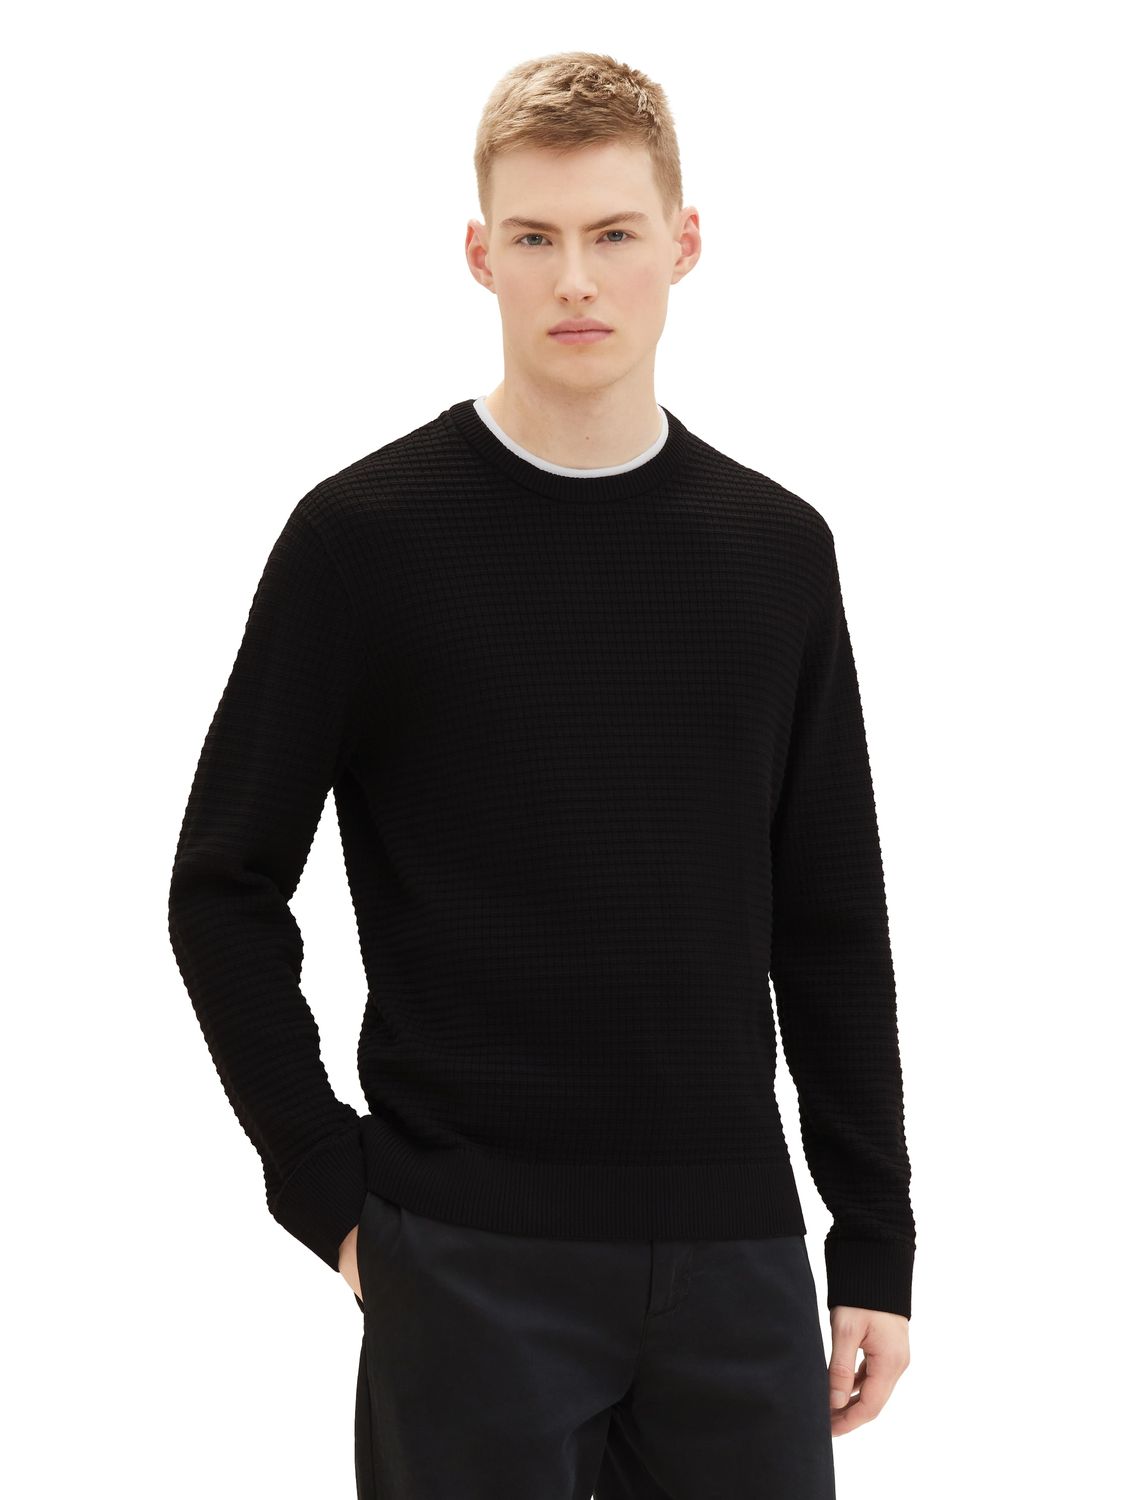 Пуловер TOM TAILOR Denim STRUCTURED DOUBLELAYER, черный пуловер tom tailor denim structured doublelayer бежевый